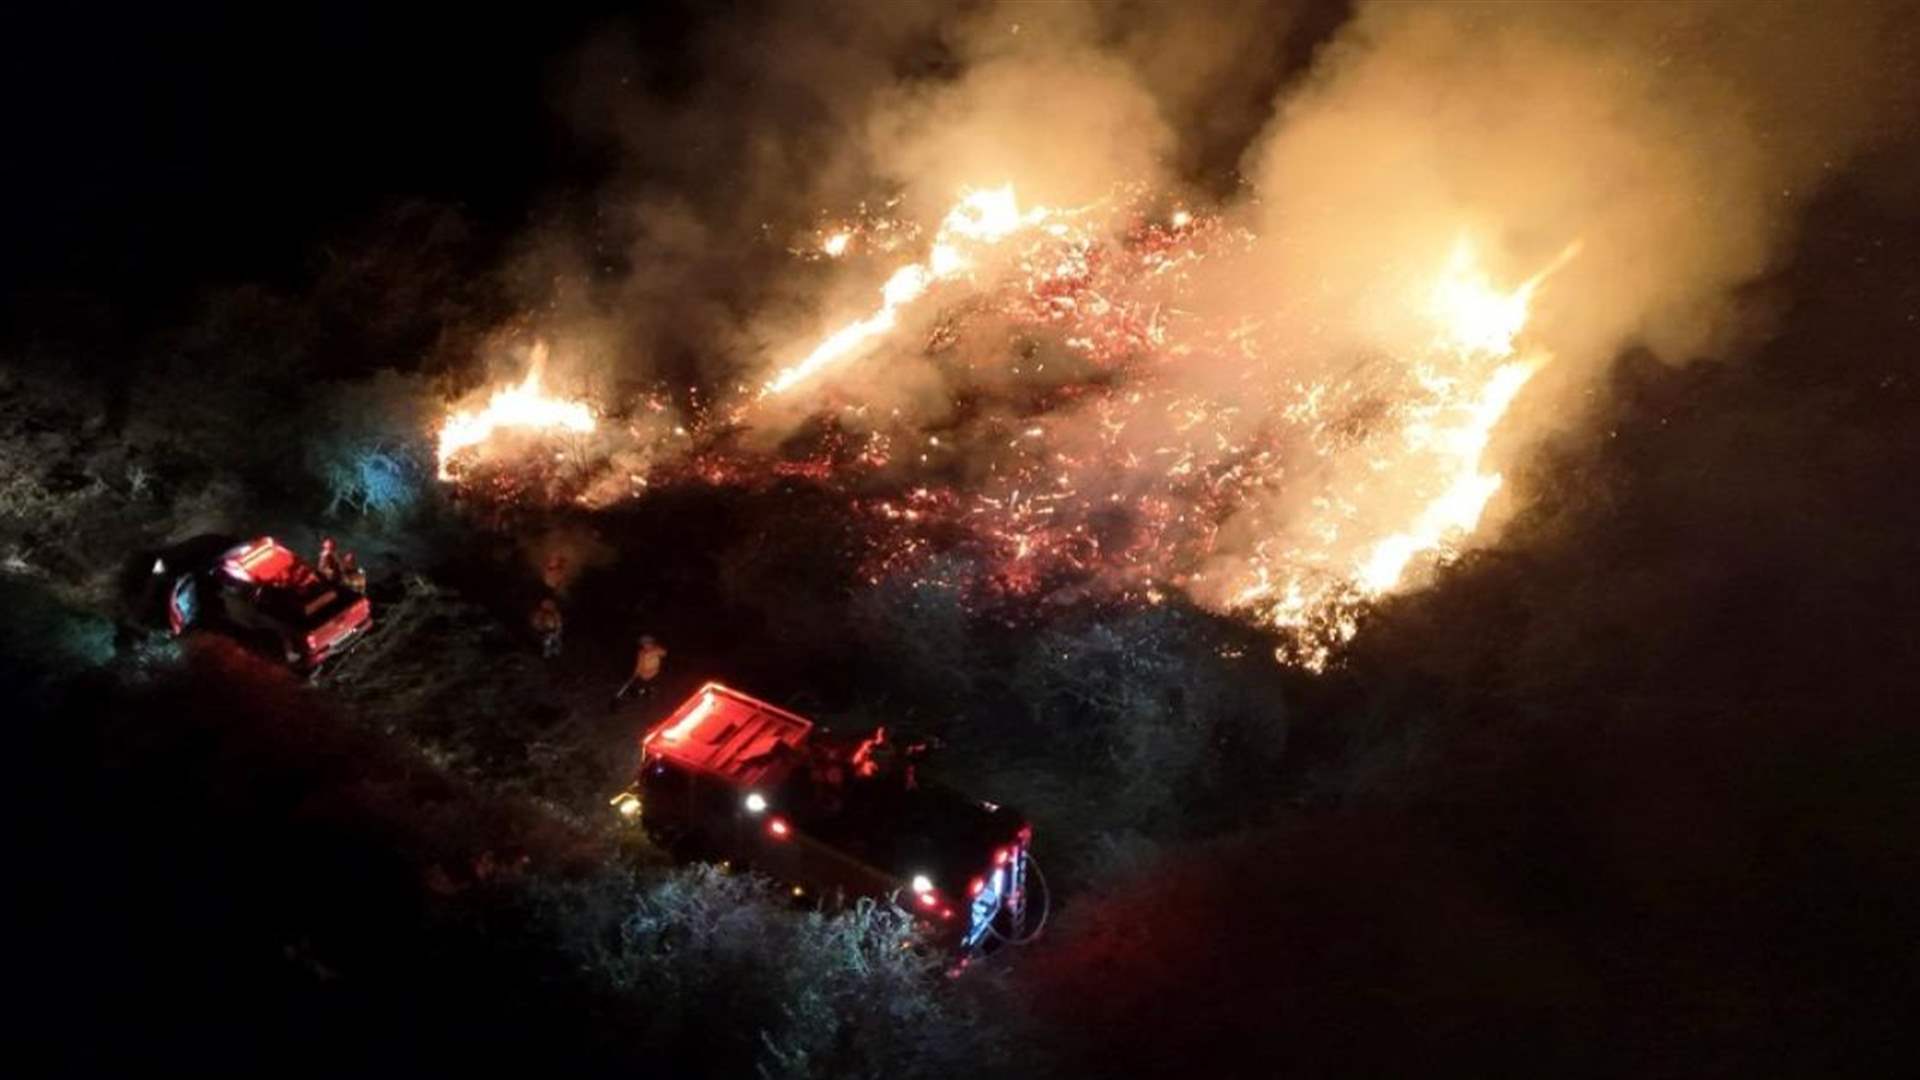 بعد اندلاع حريق غابات بسبب الالعاب النارية... توقيف 13 شخصا في اليونان